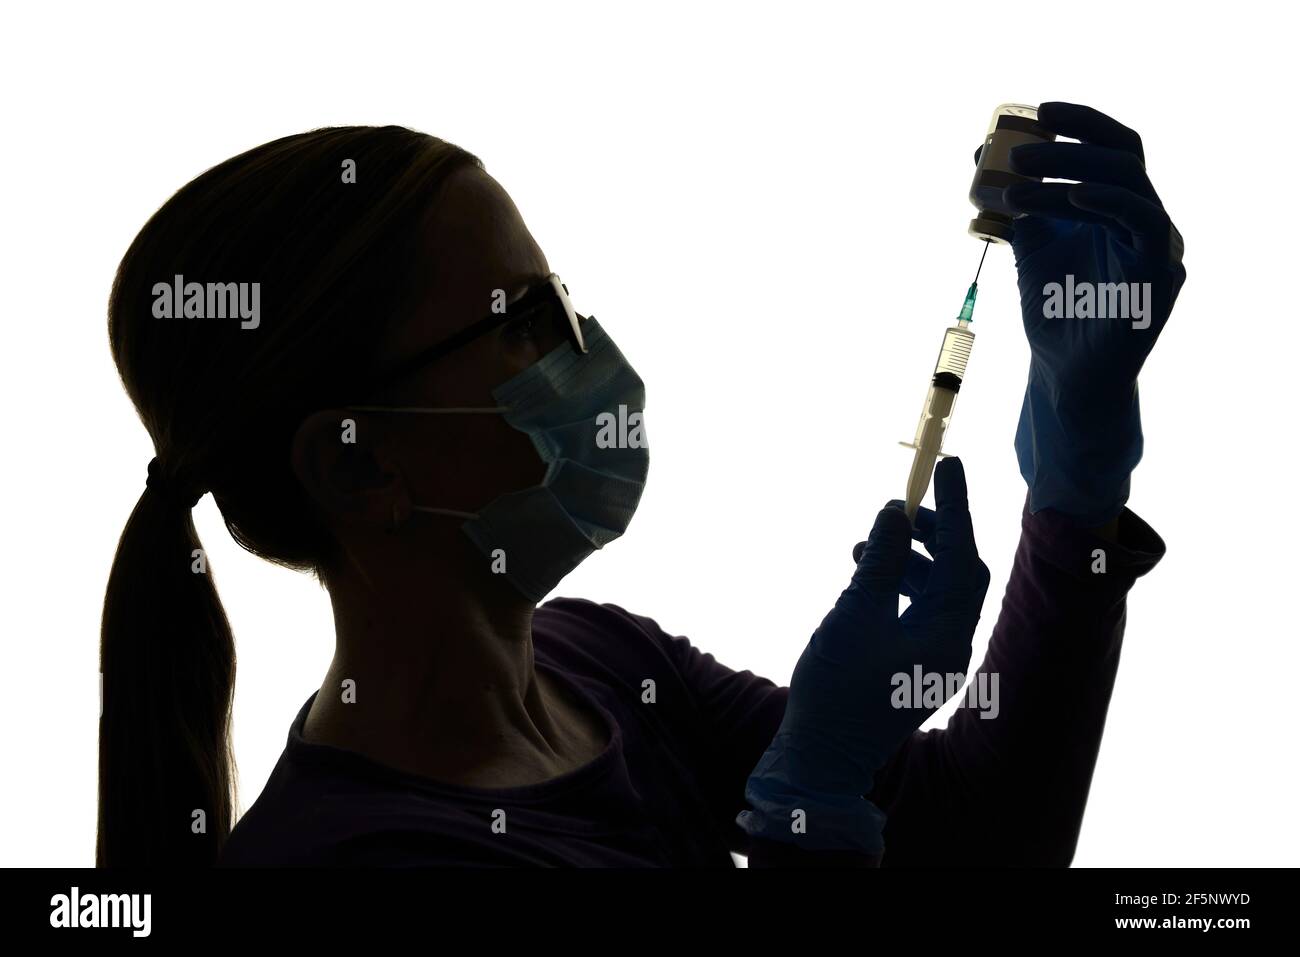 La enfermera se prepara para vacunar a un paciente con una vacuna contra el coronavirus, Silhoueted contra un fondo blanco Foto de stock